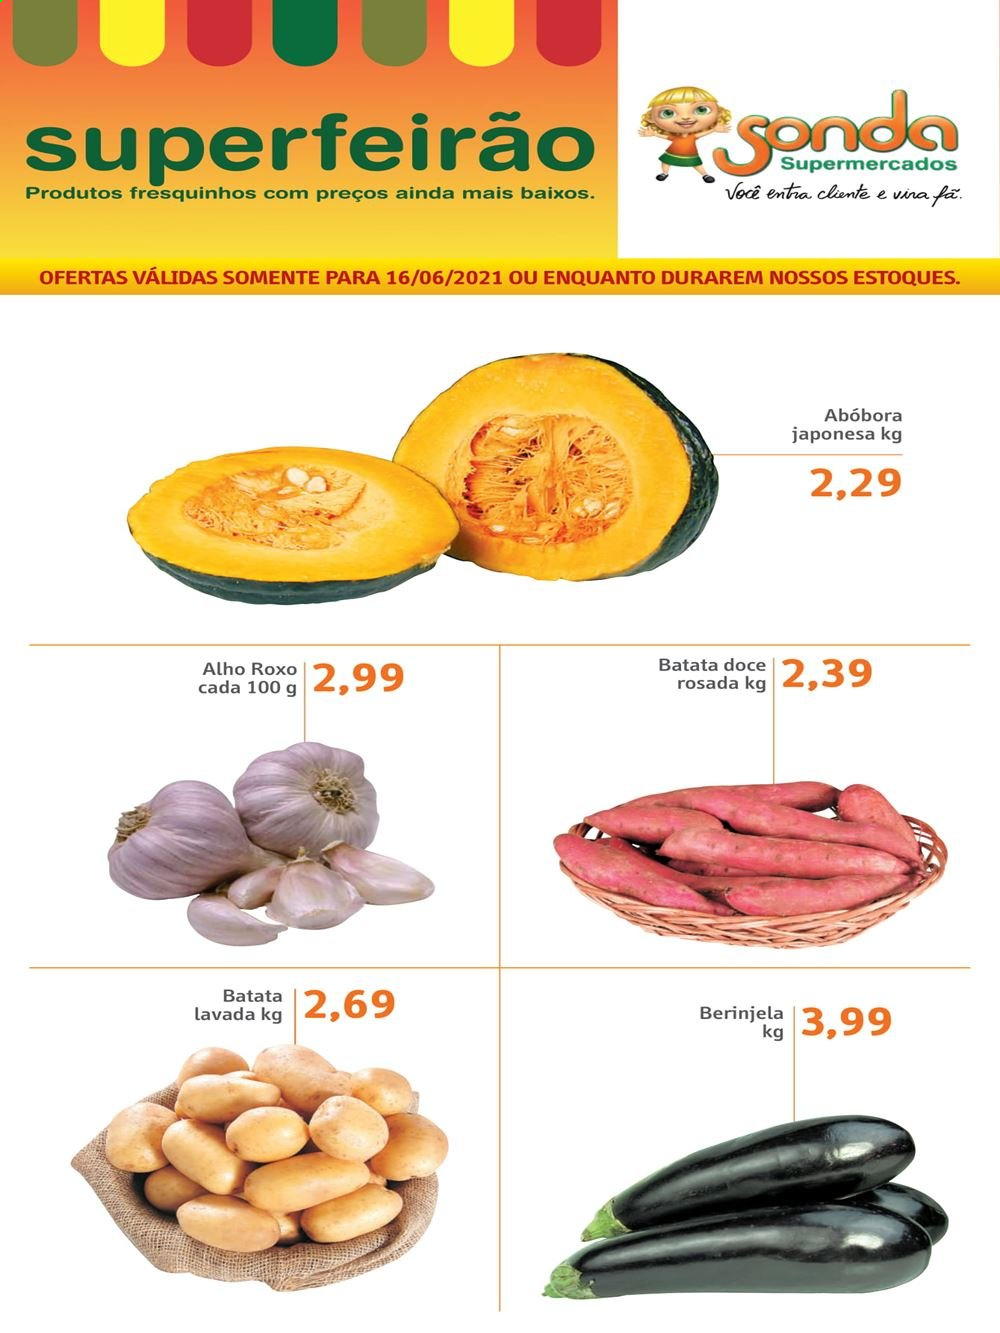 thumbnail - Folheto Sonda Supermercados - 16/06/2021 - 16/06/2021 - Produtos em promoção - batata-doce, abóbora, alho. Página 1.